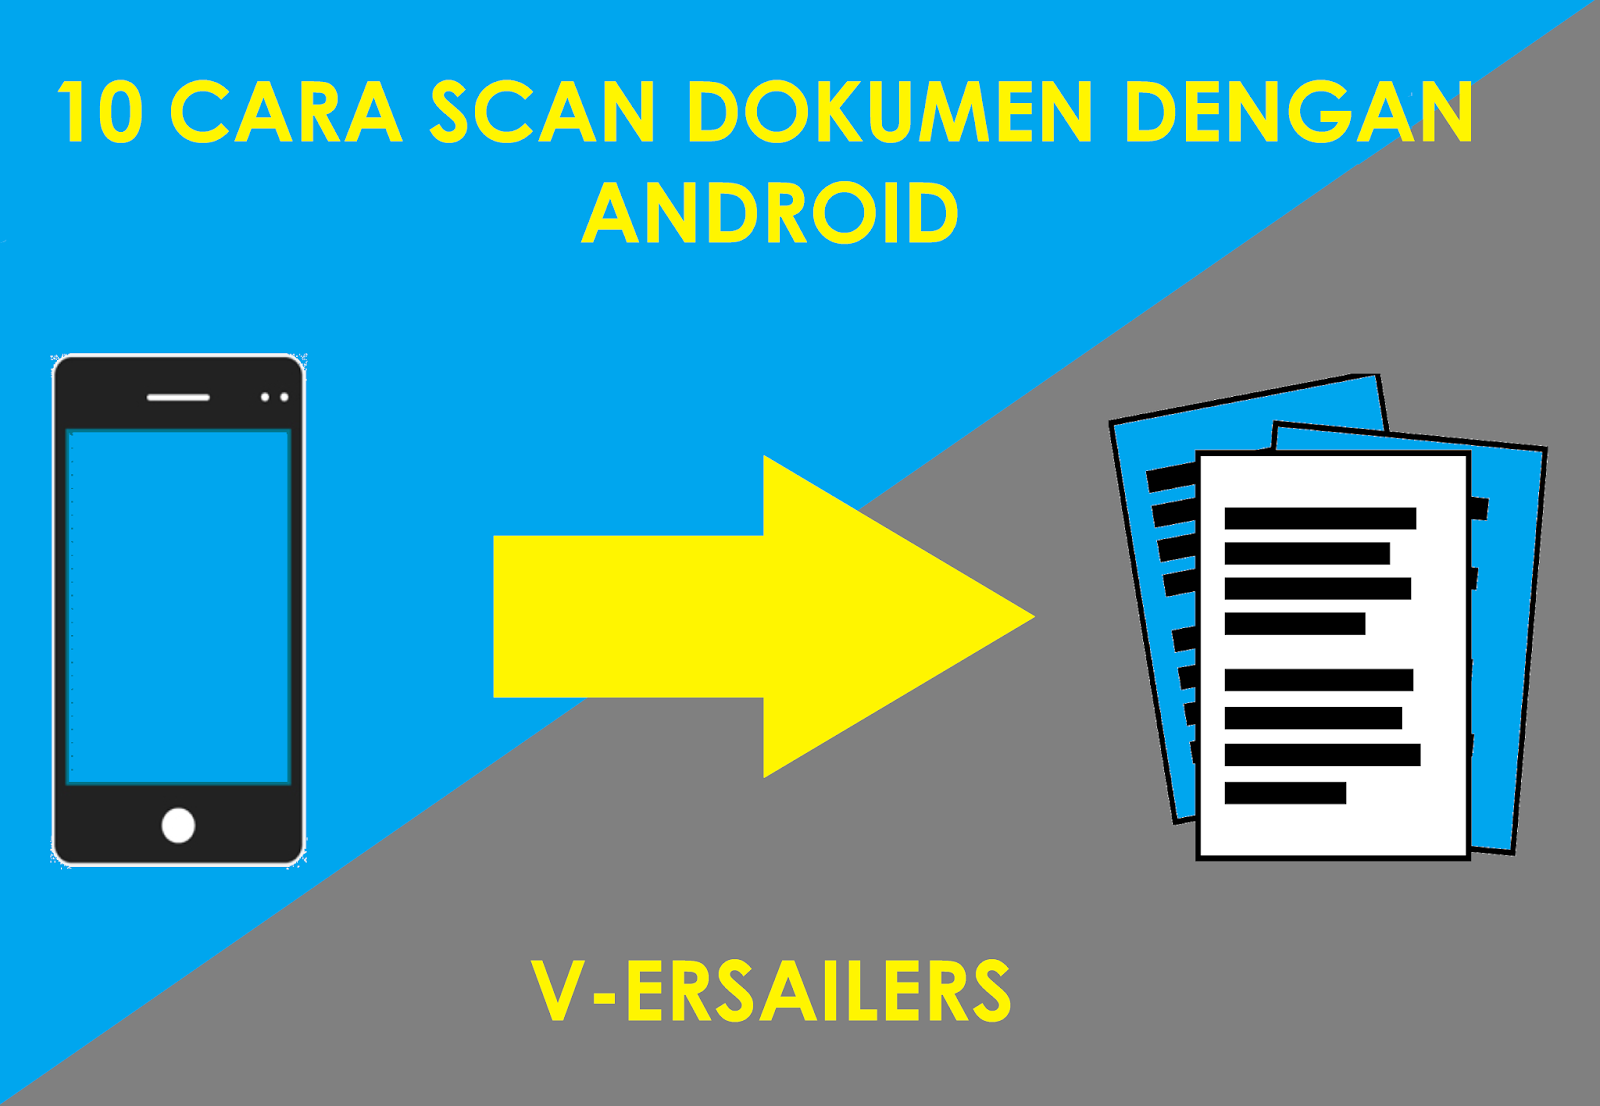 10 Cara scan dokumen di android - V-ERSAILERS